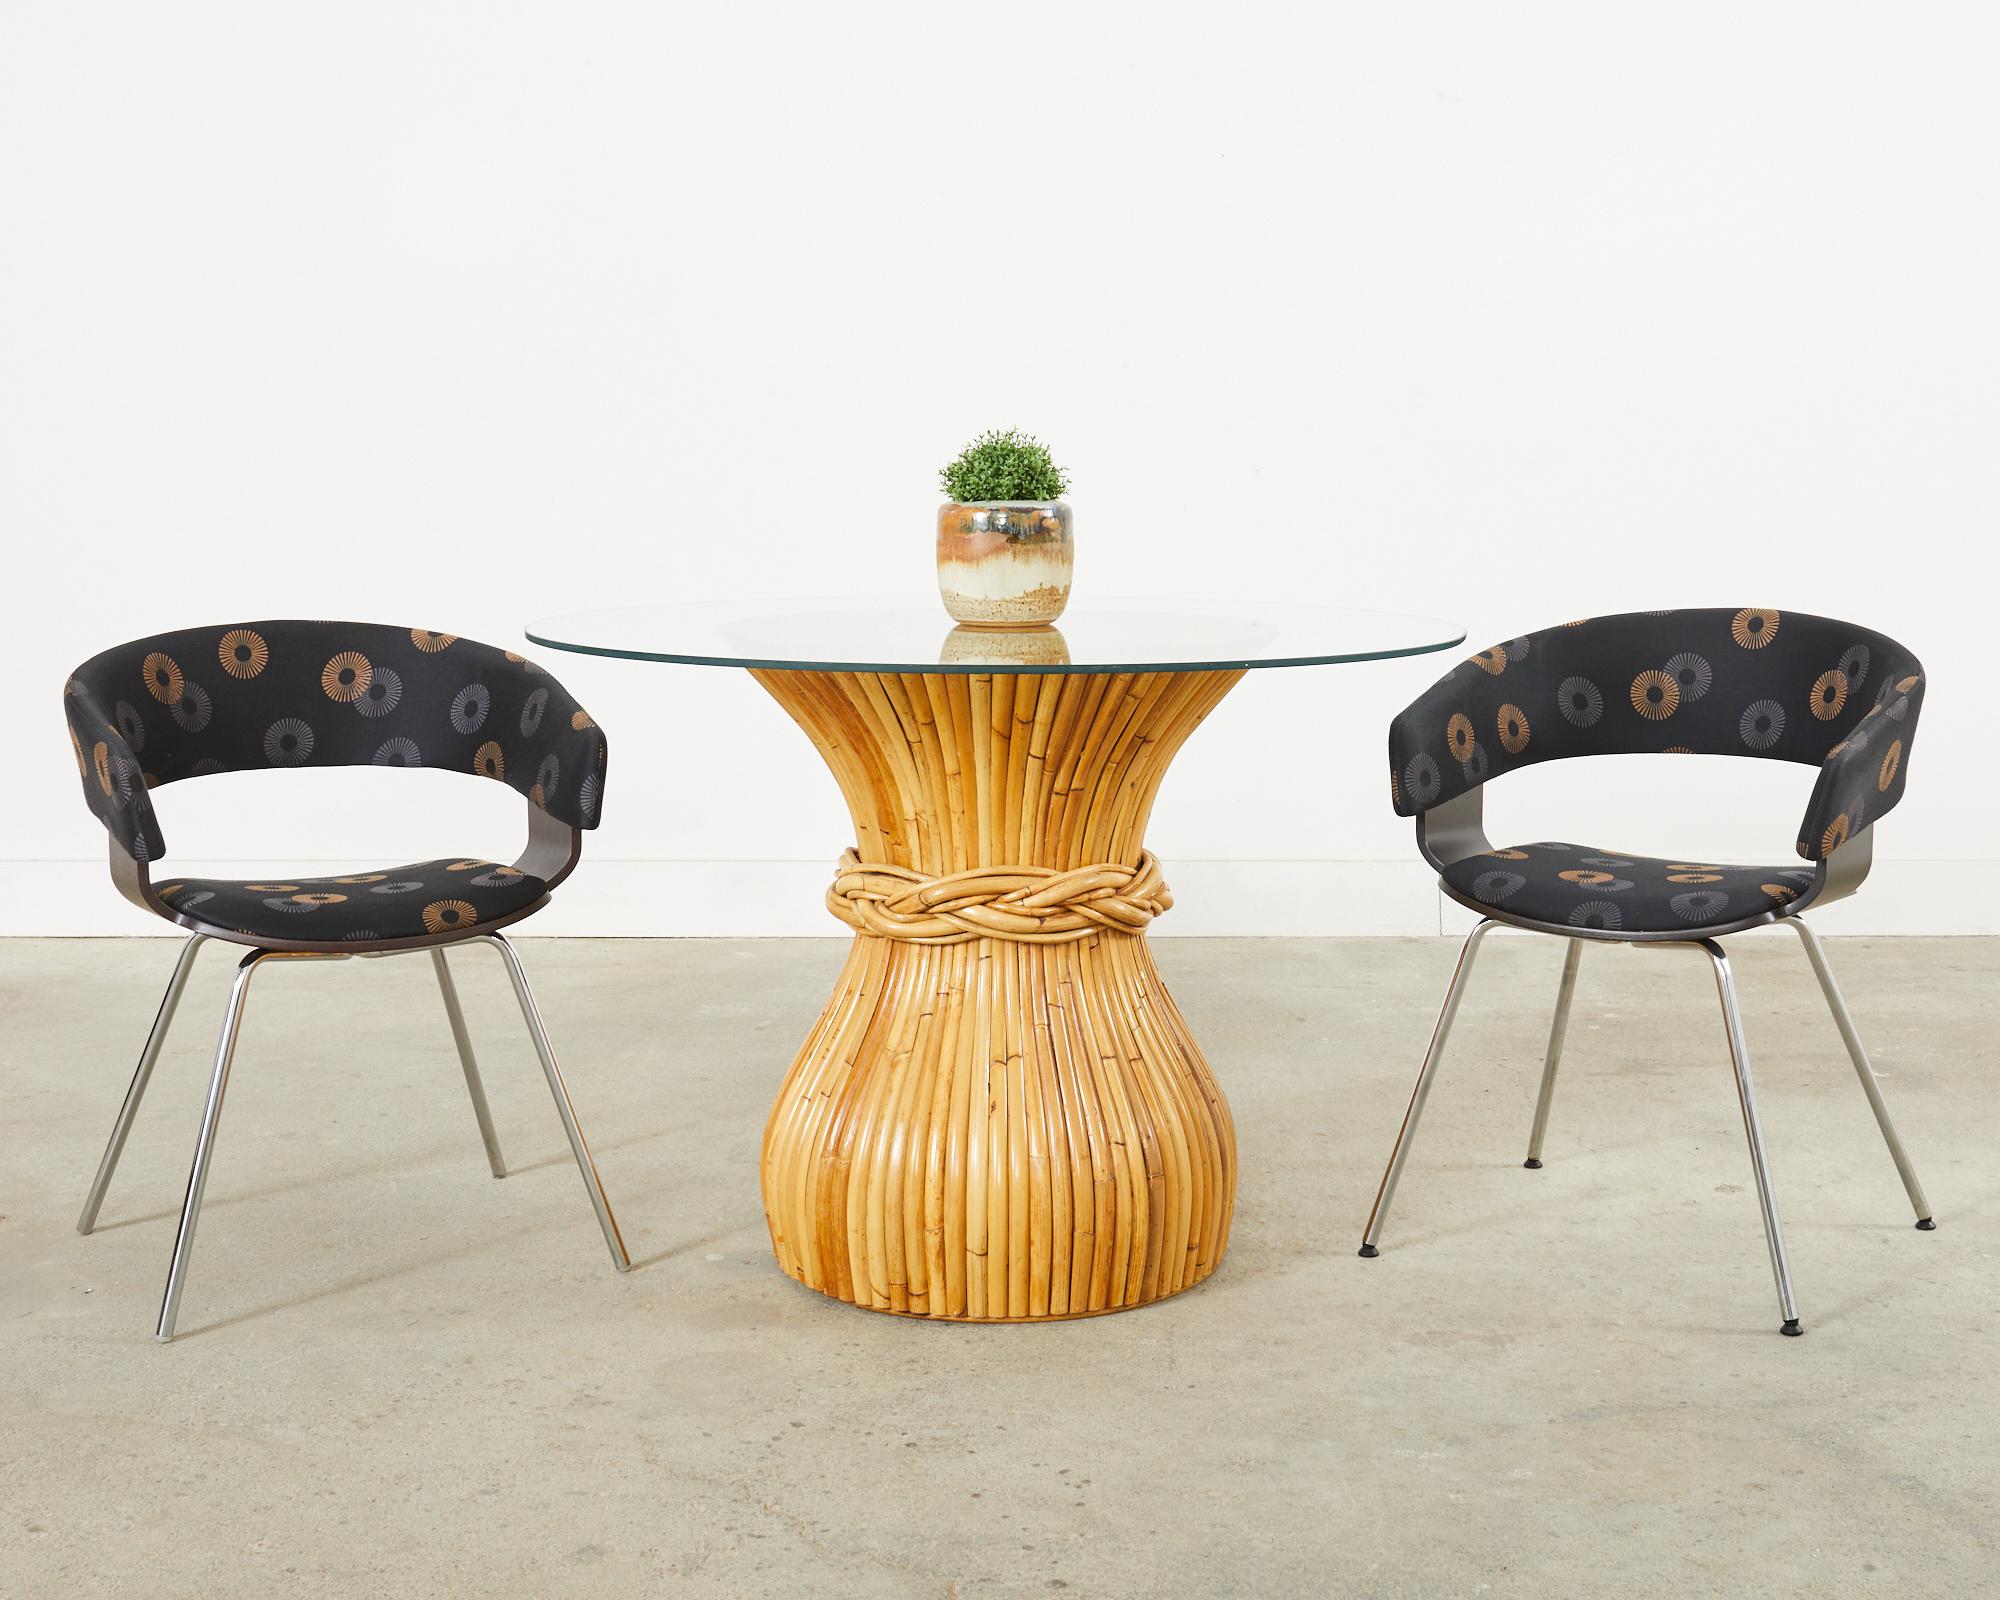 Stilvolles Set aus vier postmodernen Esstischsesseln, entworfen von John Coleman für Allermuir im späten 20. Jahrhundert. Bekannt als der Mollie-Stuhl mit einer anmutig geschwungenen Holzschale in ebonisierter Ausführung. Die Sitzschale wird von